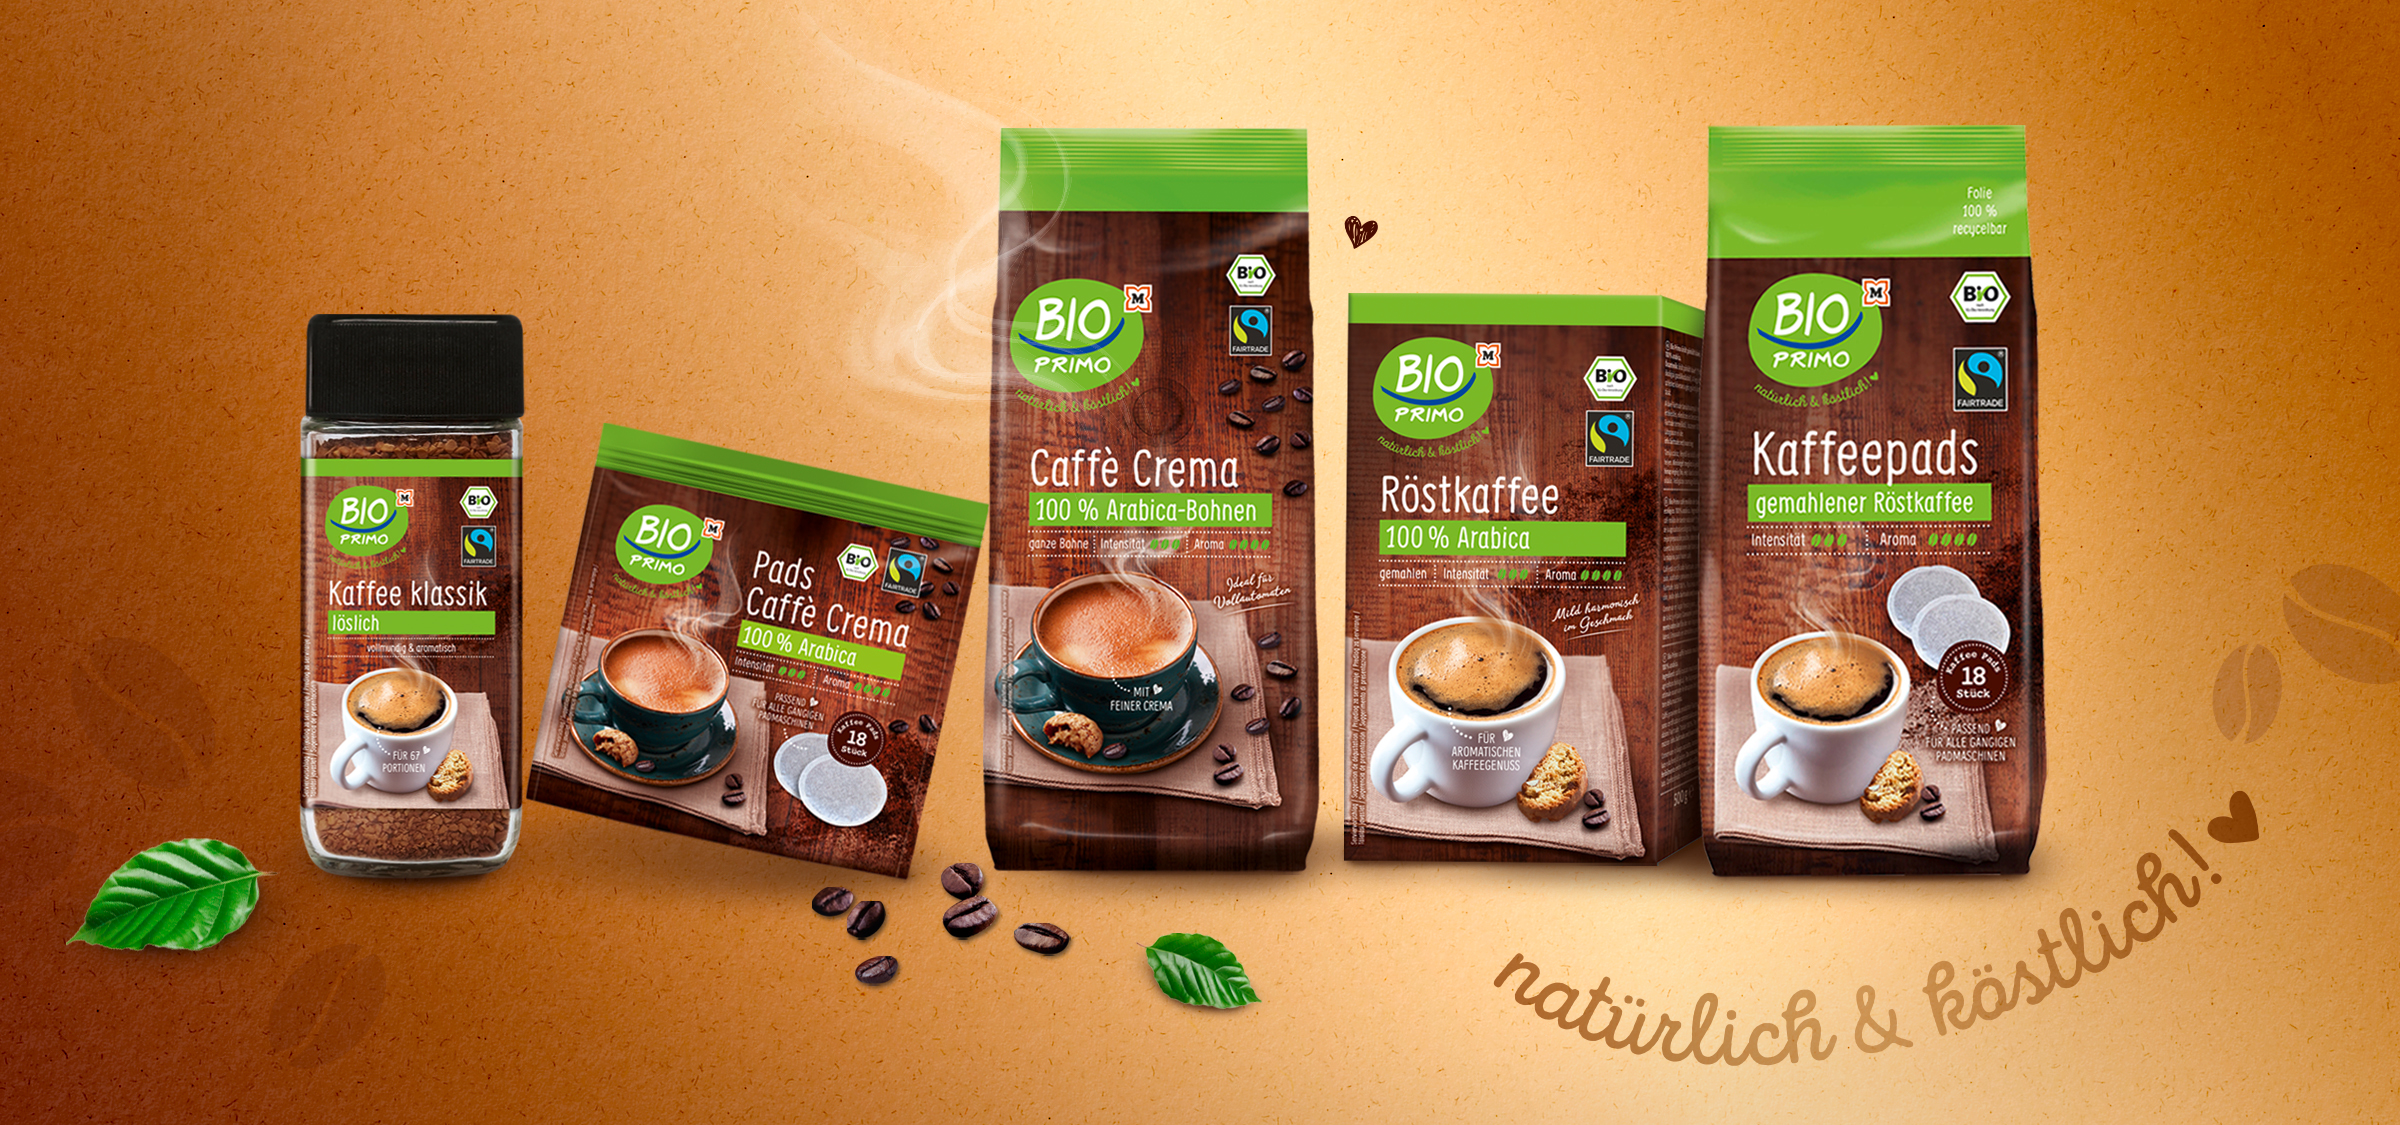 Drogerie Mller - Bio Primo Kaffee - Packaging und von adworx